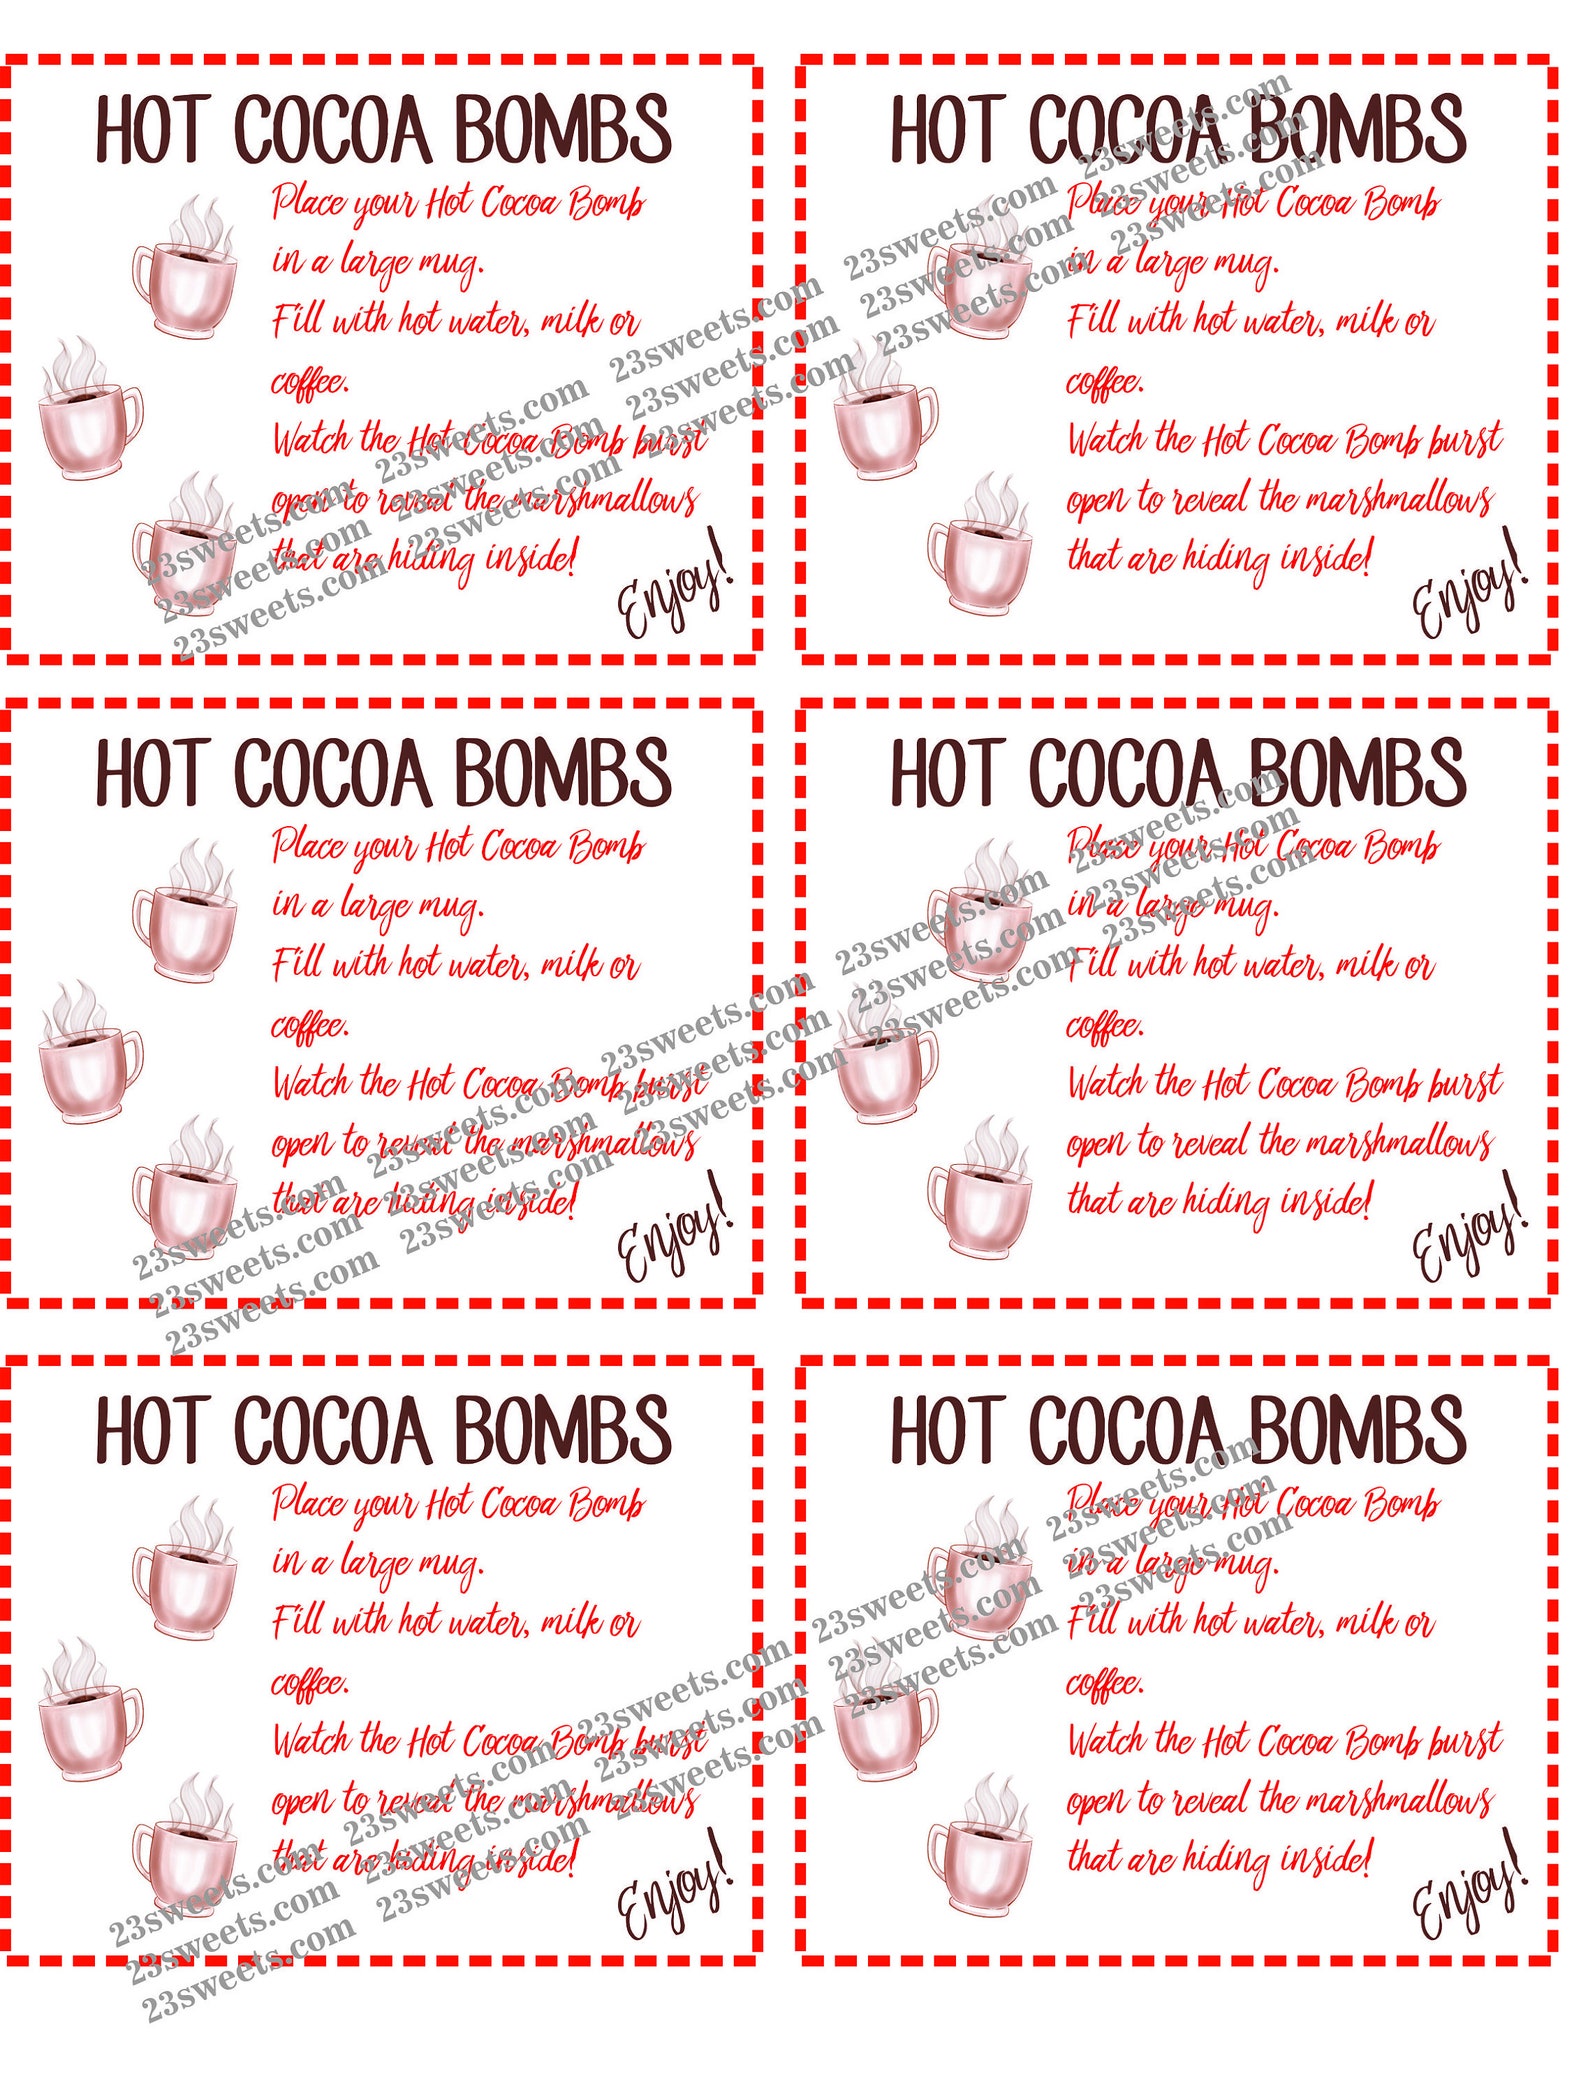 Hot Cocoa Bomb instruction sheet hot cocoa bombs HCB Etsy